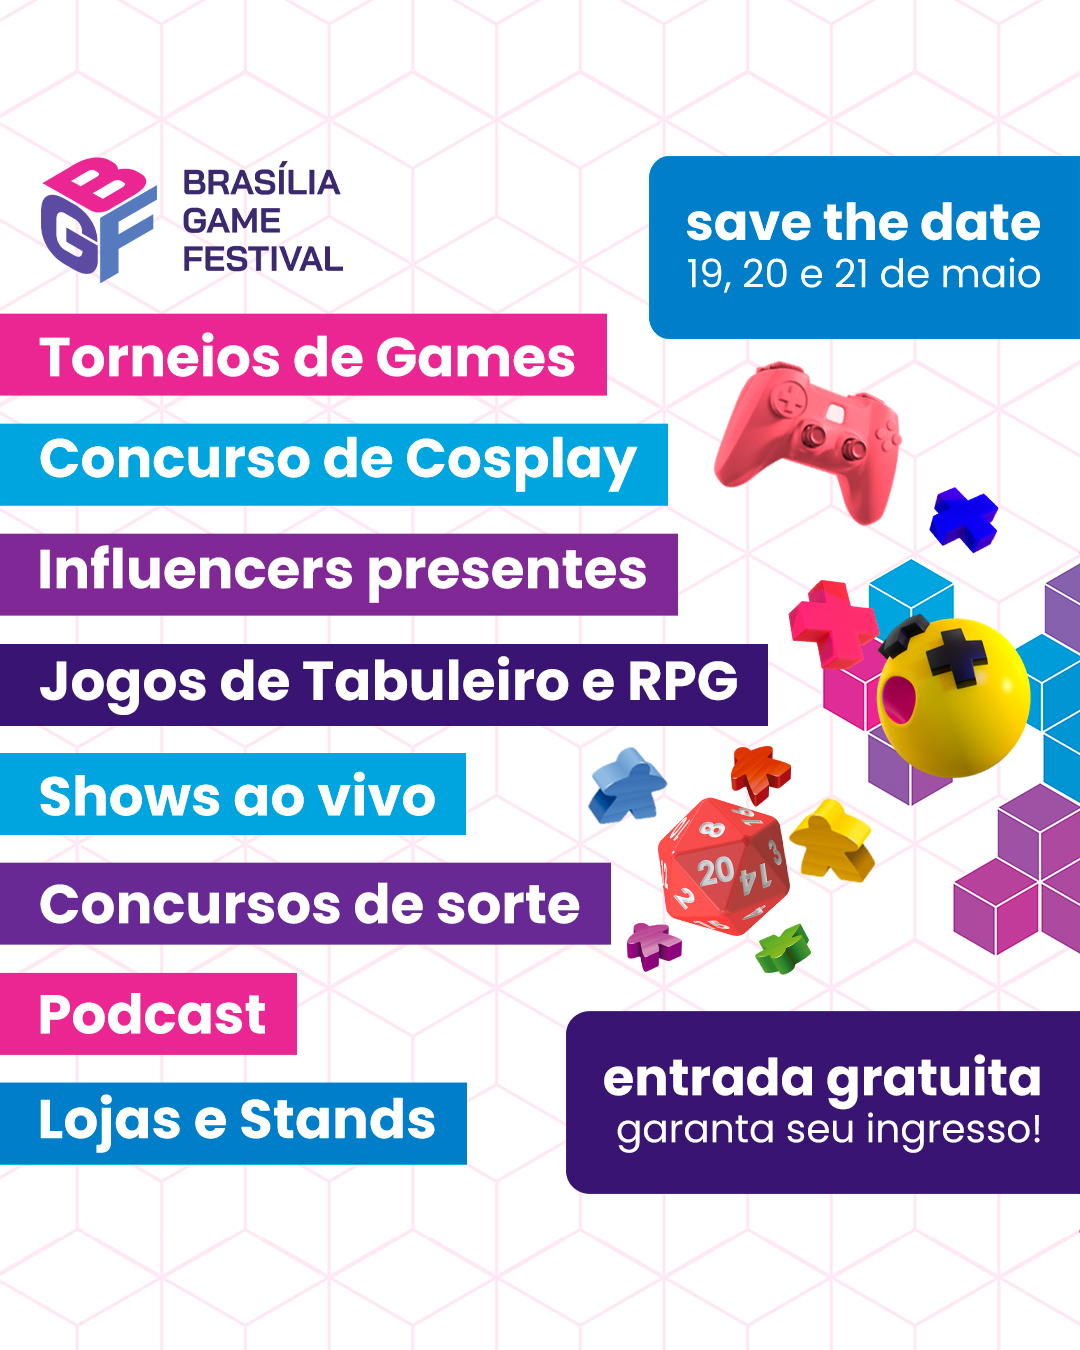 Torneios de games já pagam mais de R$ 10 milhões em prêmios no Brasil -  Forbes